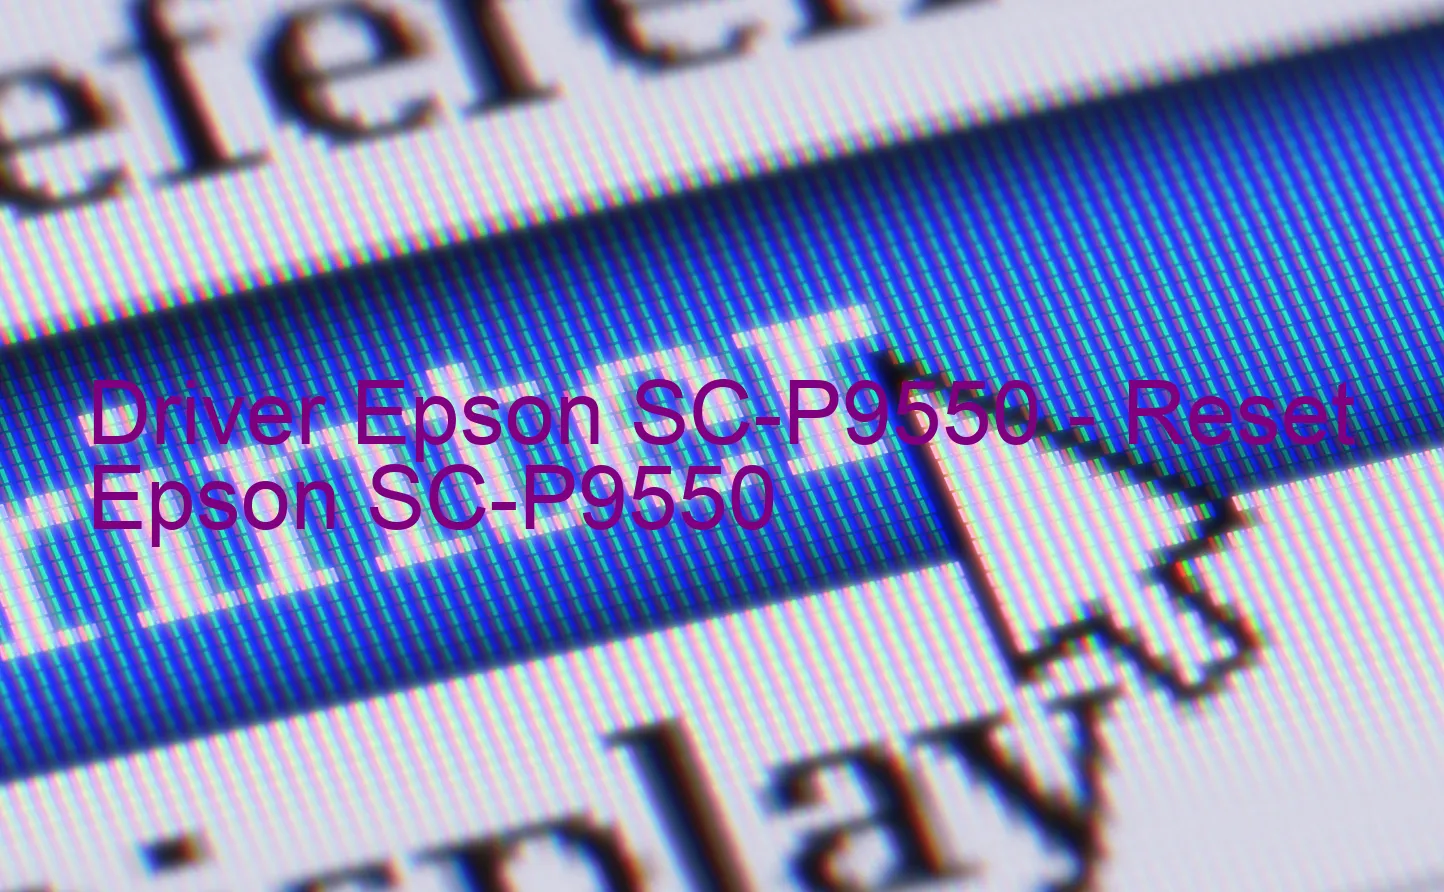 Epson SC-P9550のドライバー、Epson SC-P9550のリセットソフトウェア